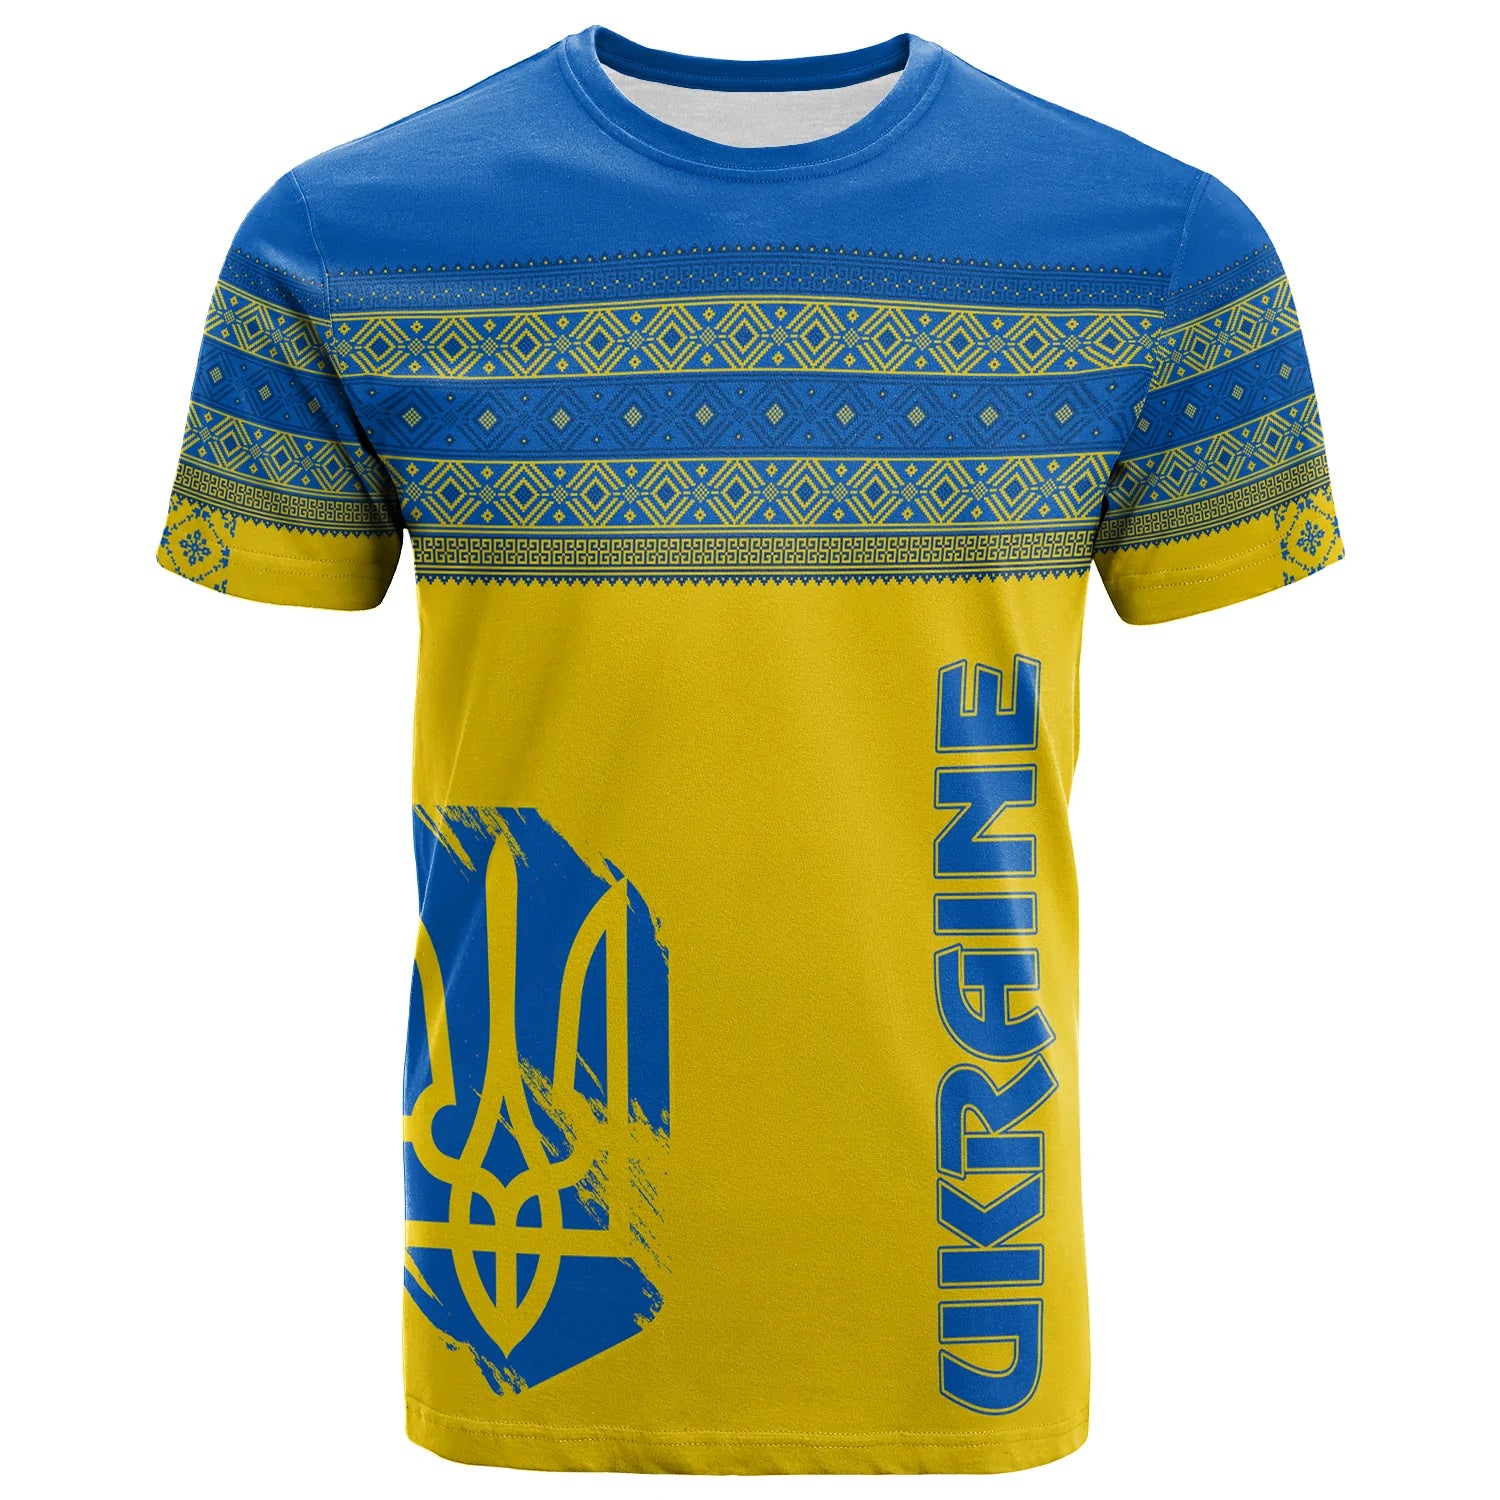 ukraine-unity-day-t-shirt-vyshyvanka-style